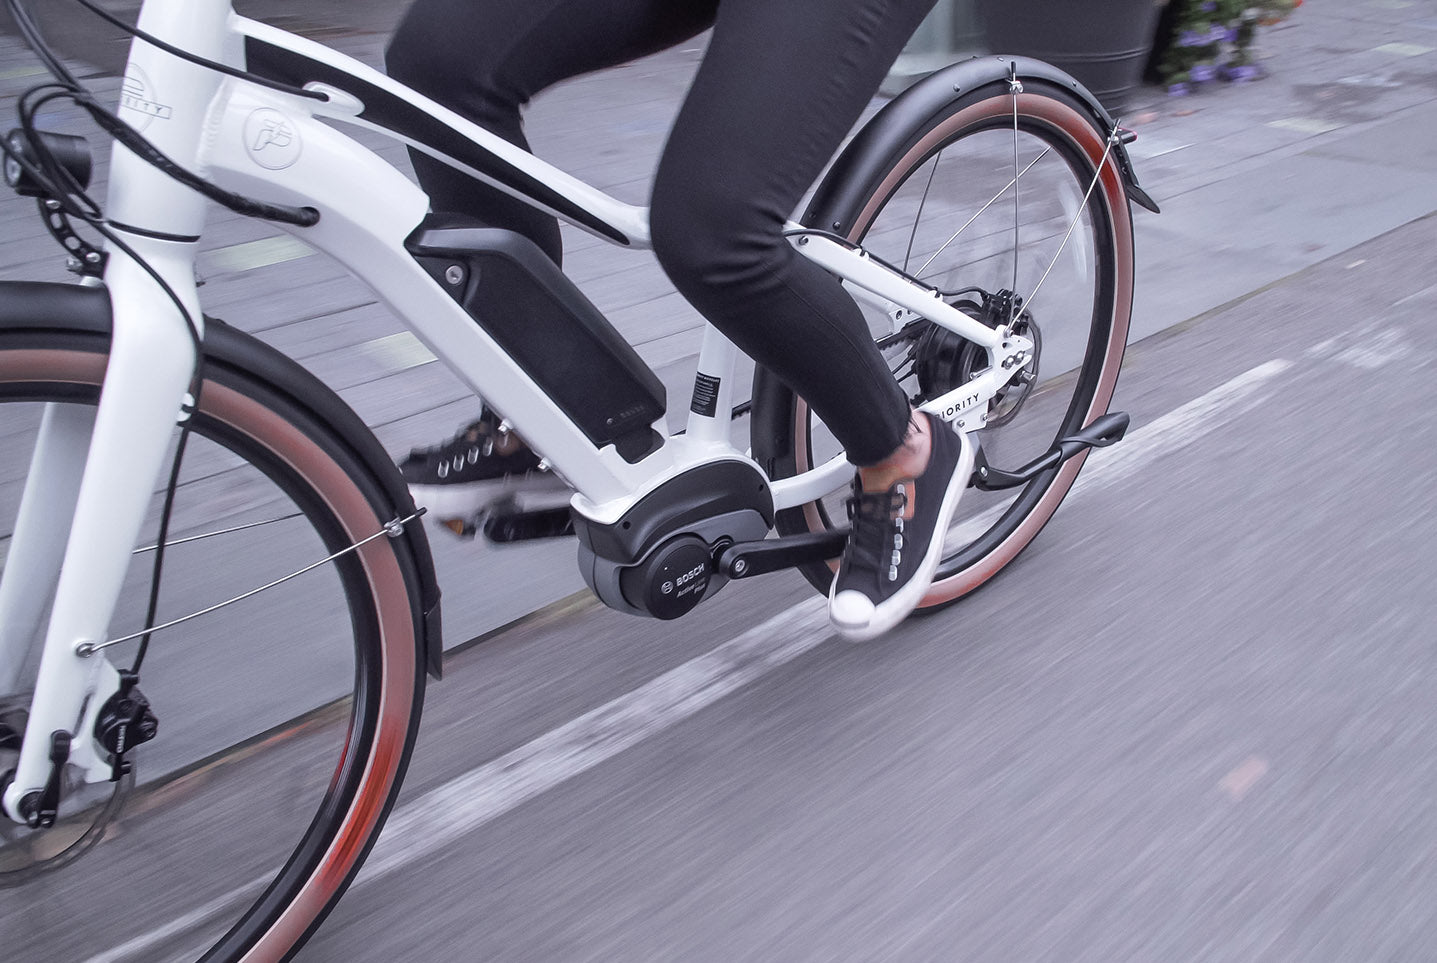 PRIORITY EMBARK E-BIKE – Priority Bicycles